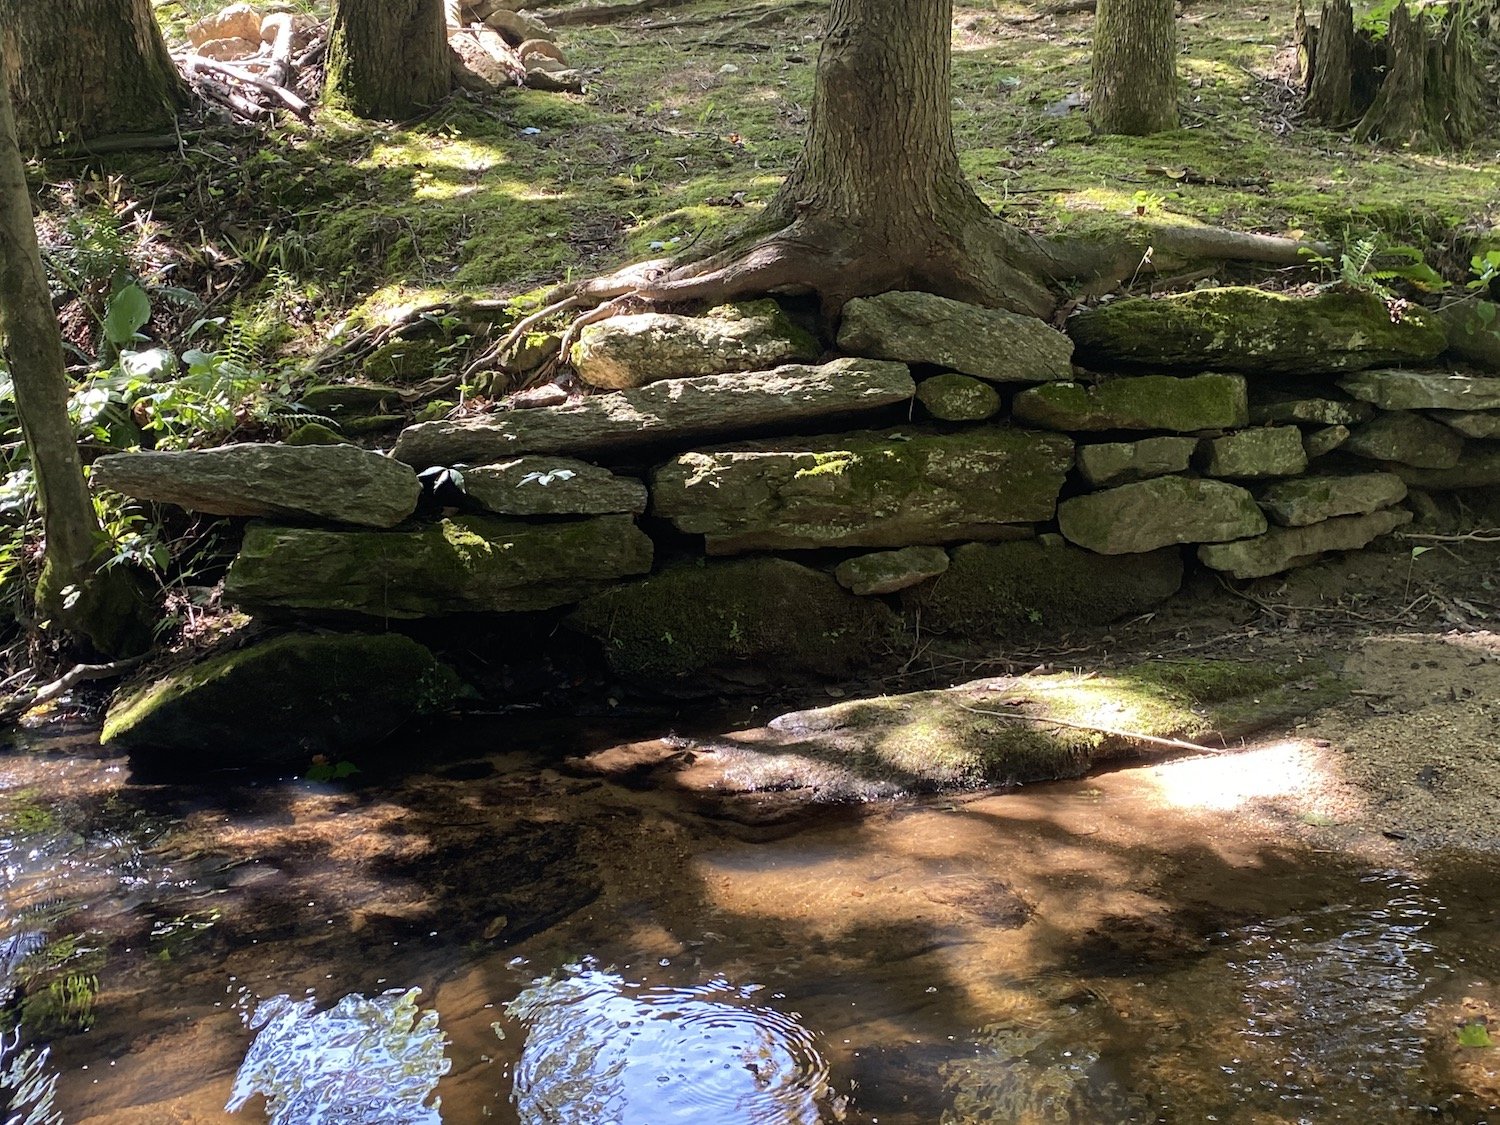 Cut granite supporting creek bank